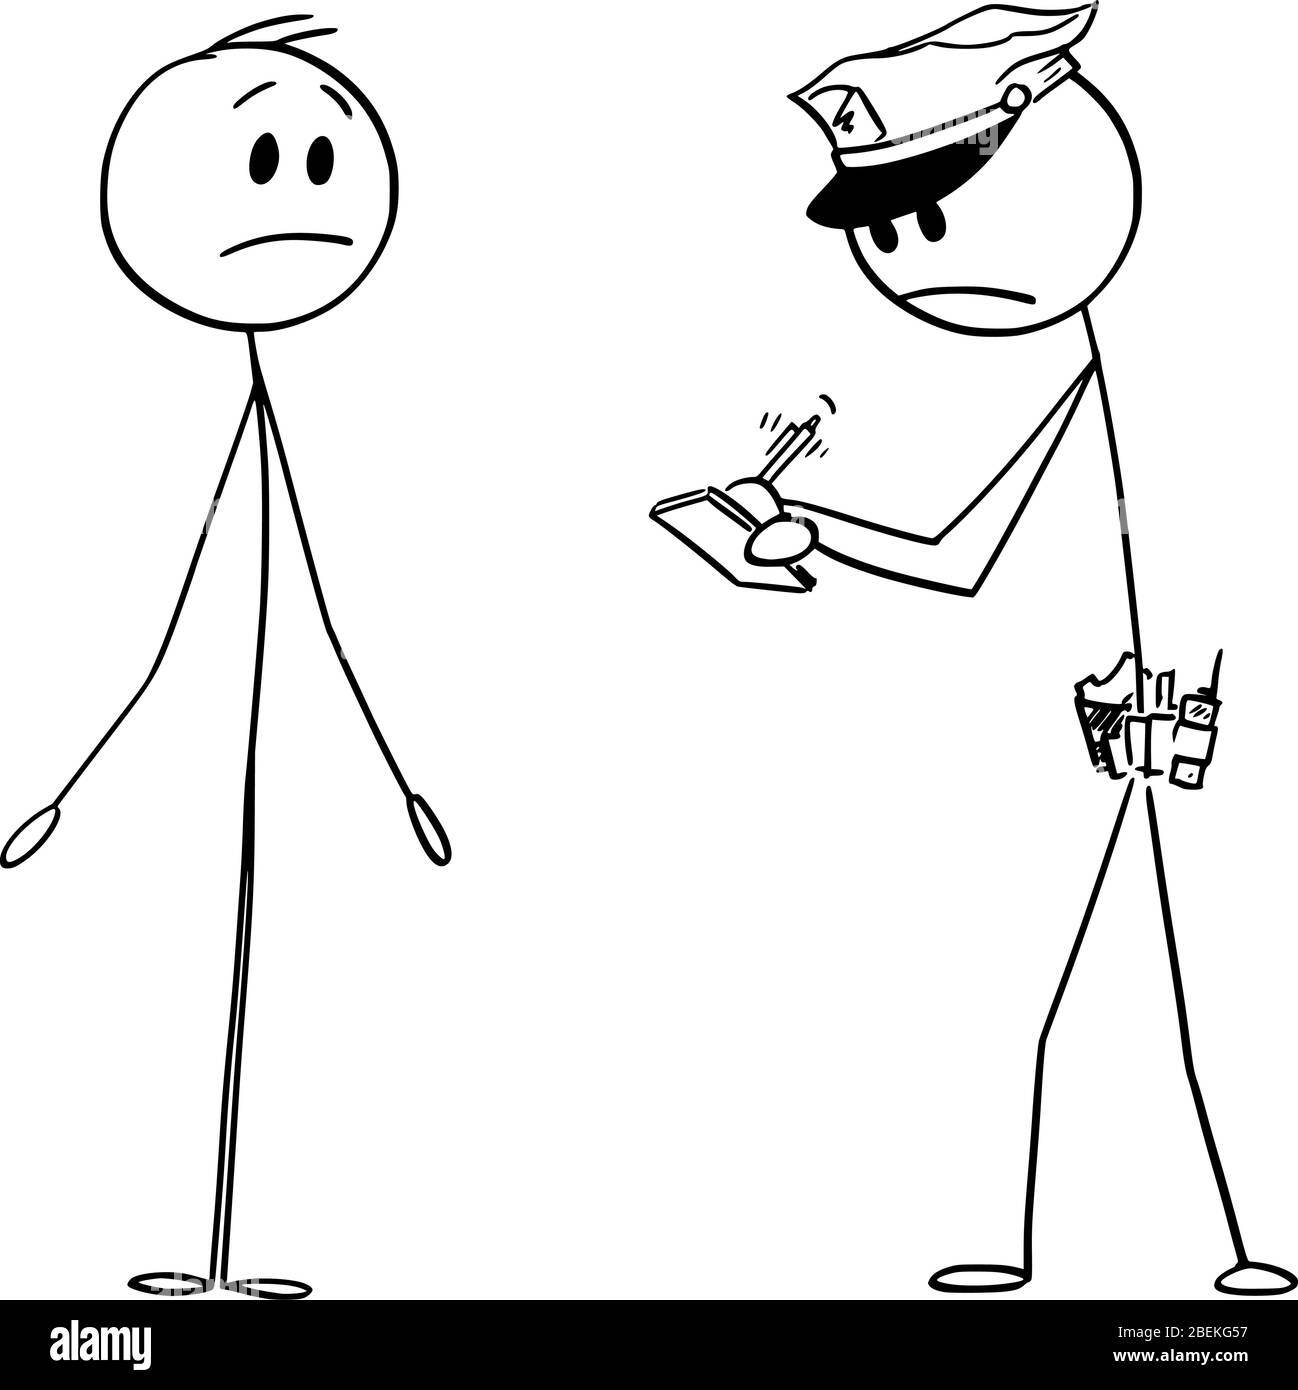 Vektor Cartoon Stick Figur Zeichnung konzeptionelle Illustration von Polizisten oder Polizisten Schreiben von Benachrichtigungen oder fein, und Mann zeigt ich weiß nicht, oder ich bin nicht schuldig Geste. Stock Vektor